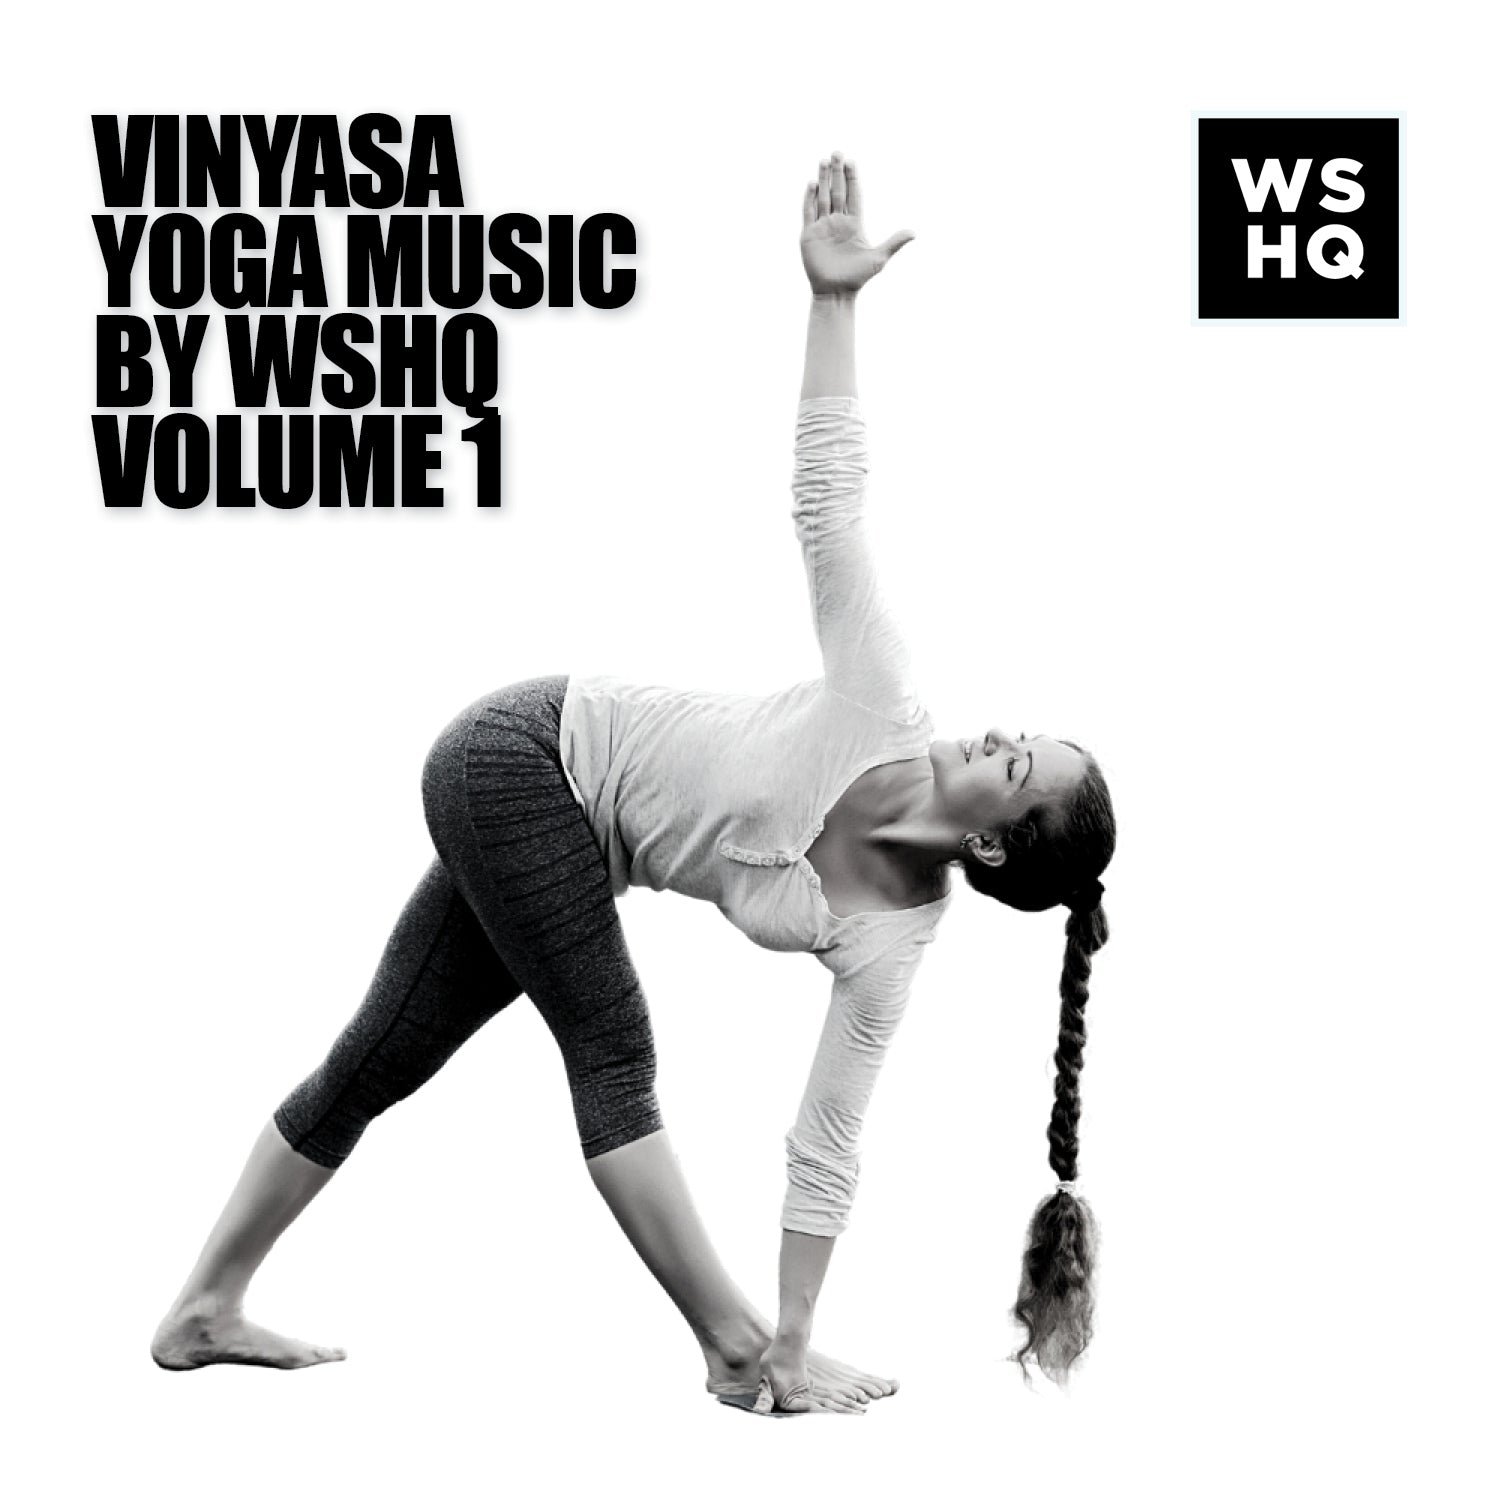 Vinyasa Yoga Music 1 Hour